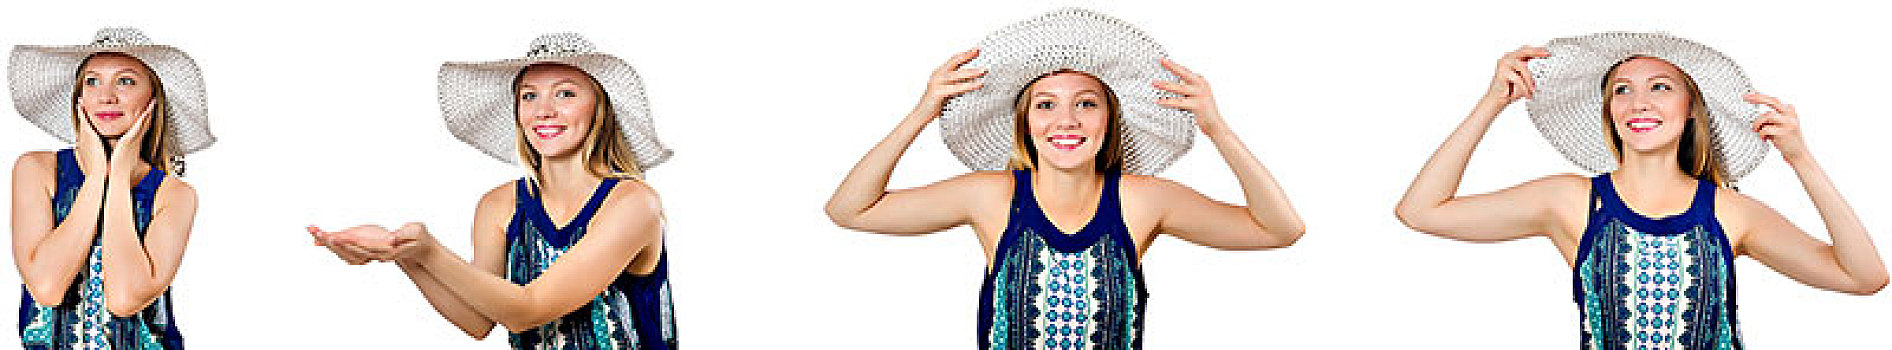 抽象拼贴画,女人,巴拿马草帽,隔绝,白色背景